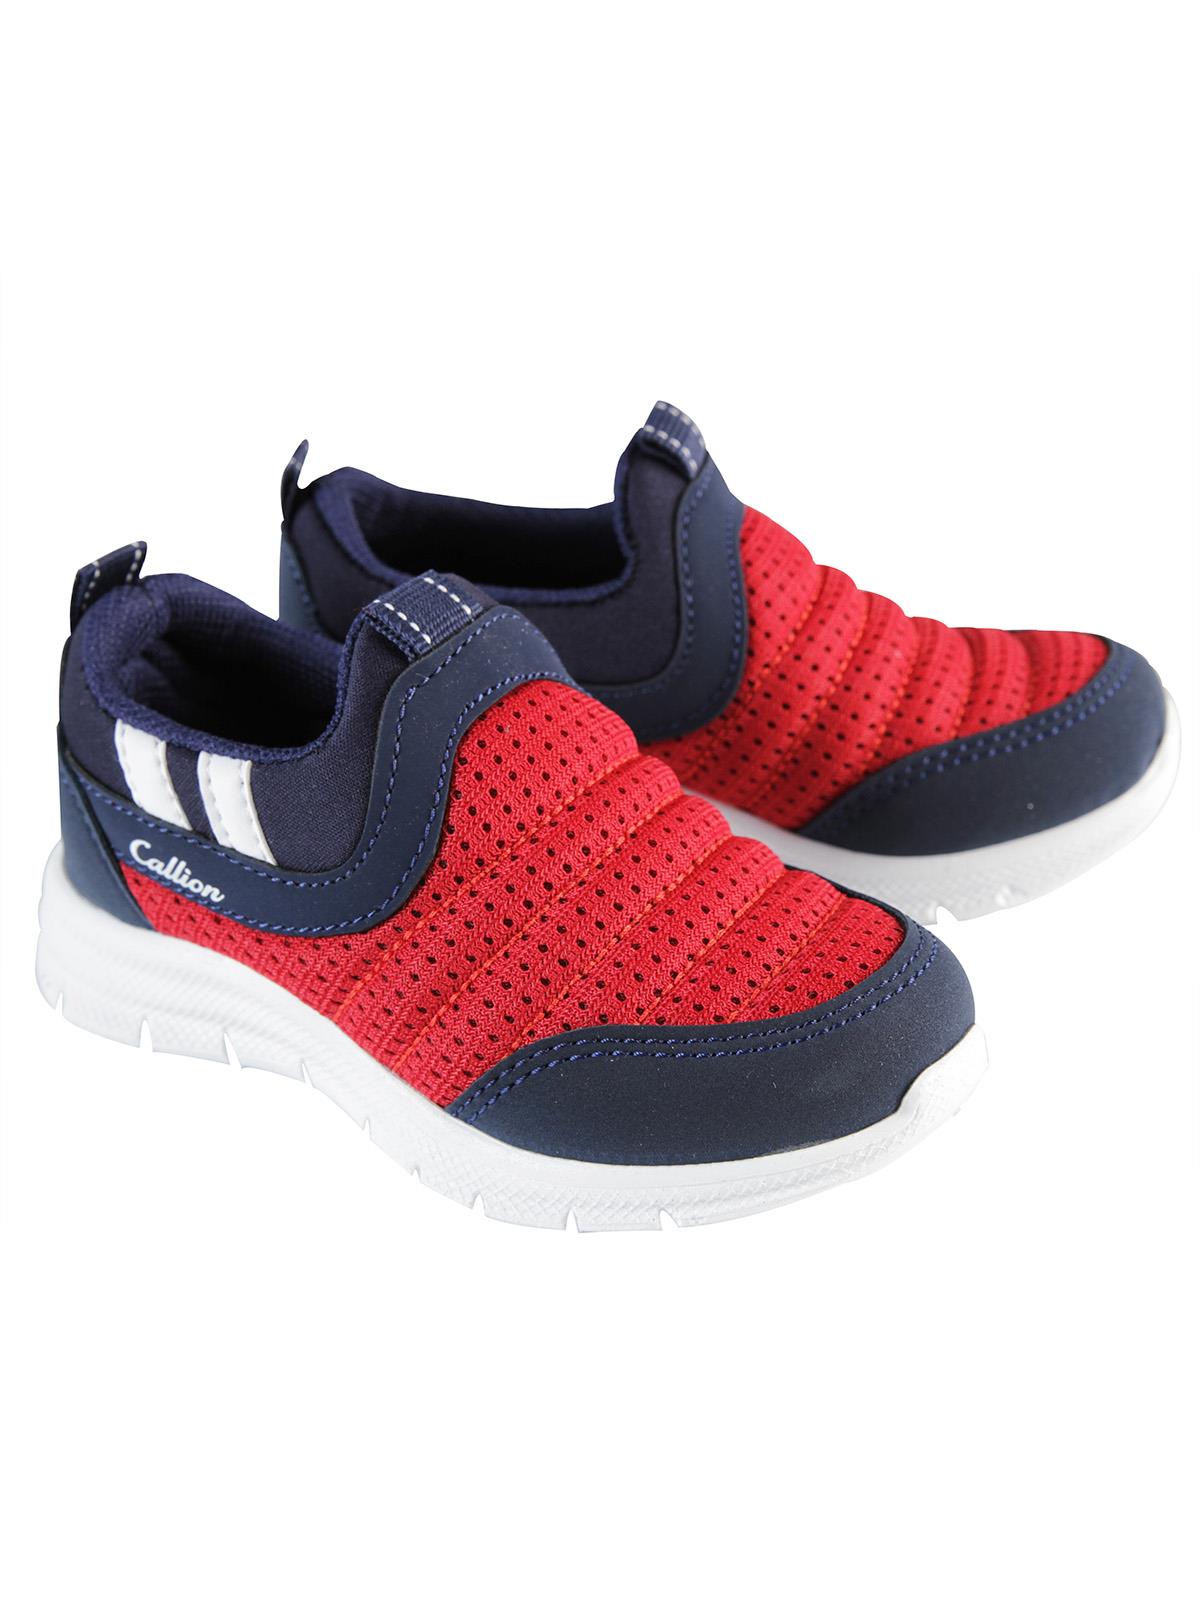 Callion Erkek Çocuk Spor Ayakkabı 26-30 Numara Kırmızı